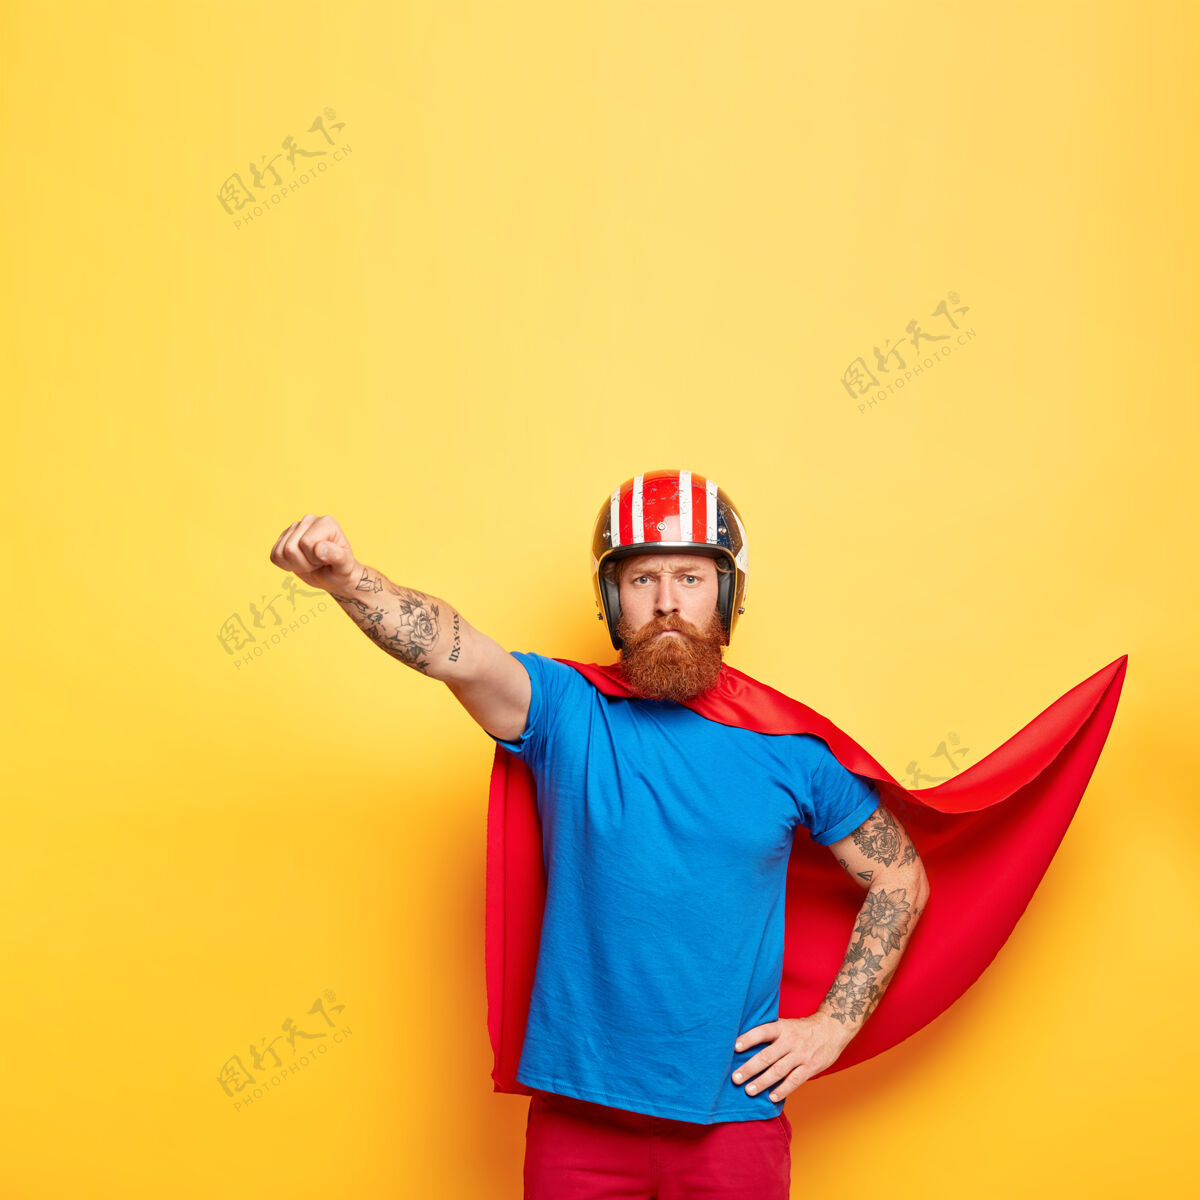 超级英雄自信严肃的超人拥有超人的力量 做出飞翔的姿态 随时准备飞翔 帮助人们强壮手势超自然